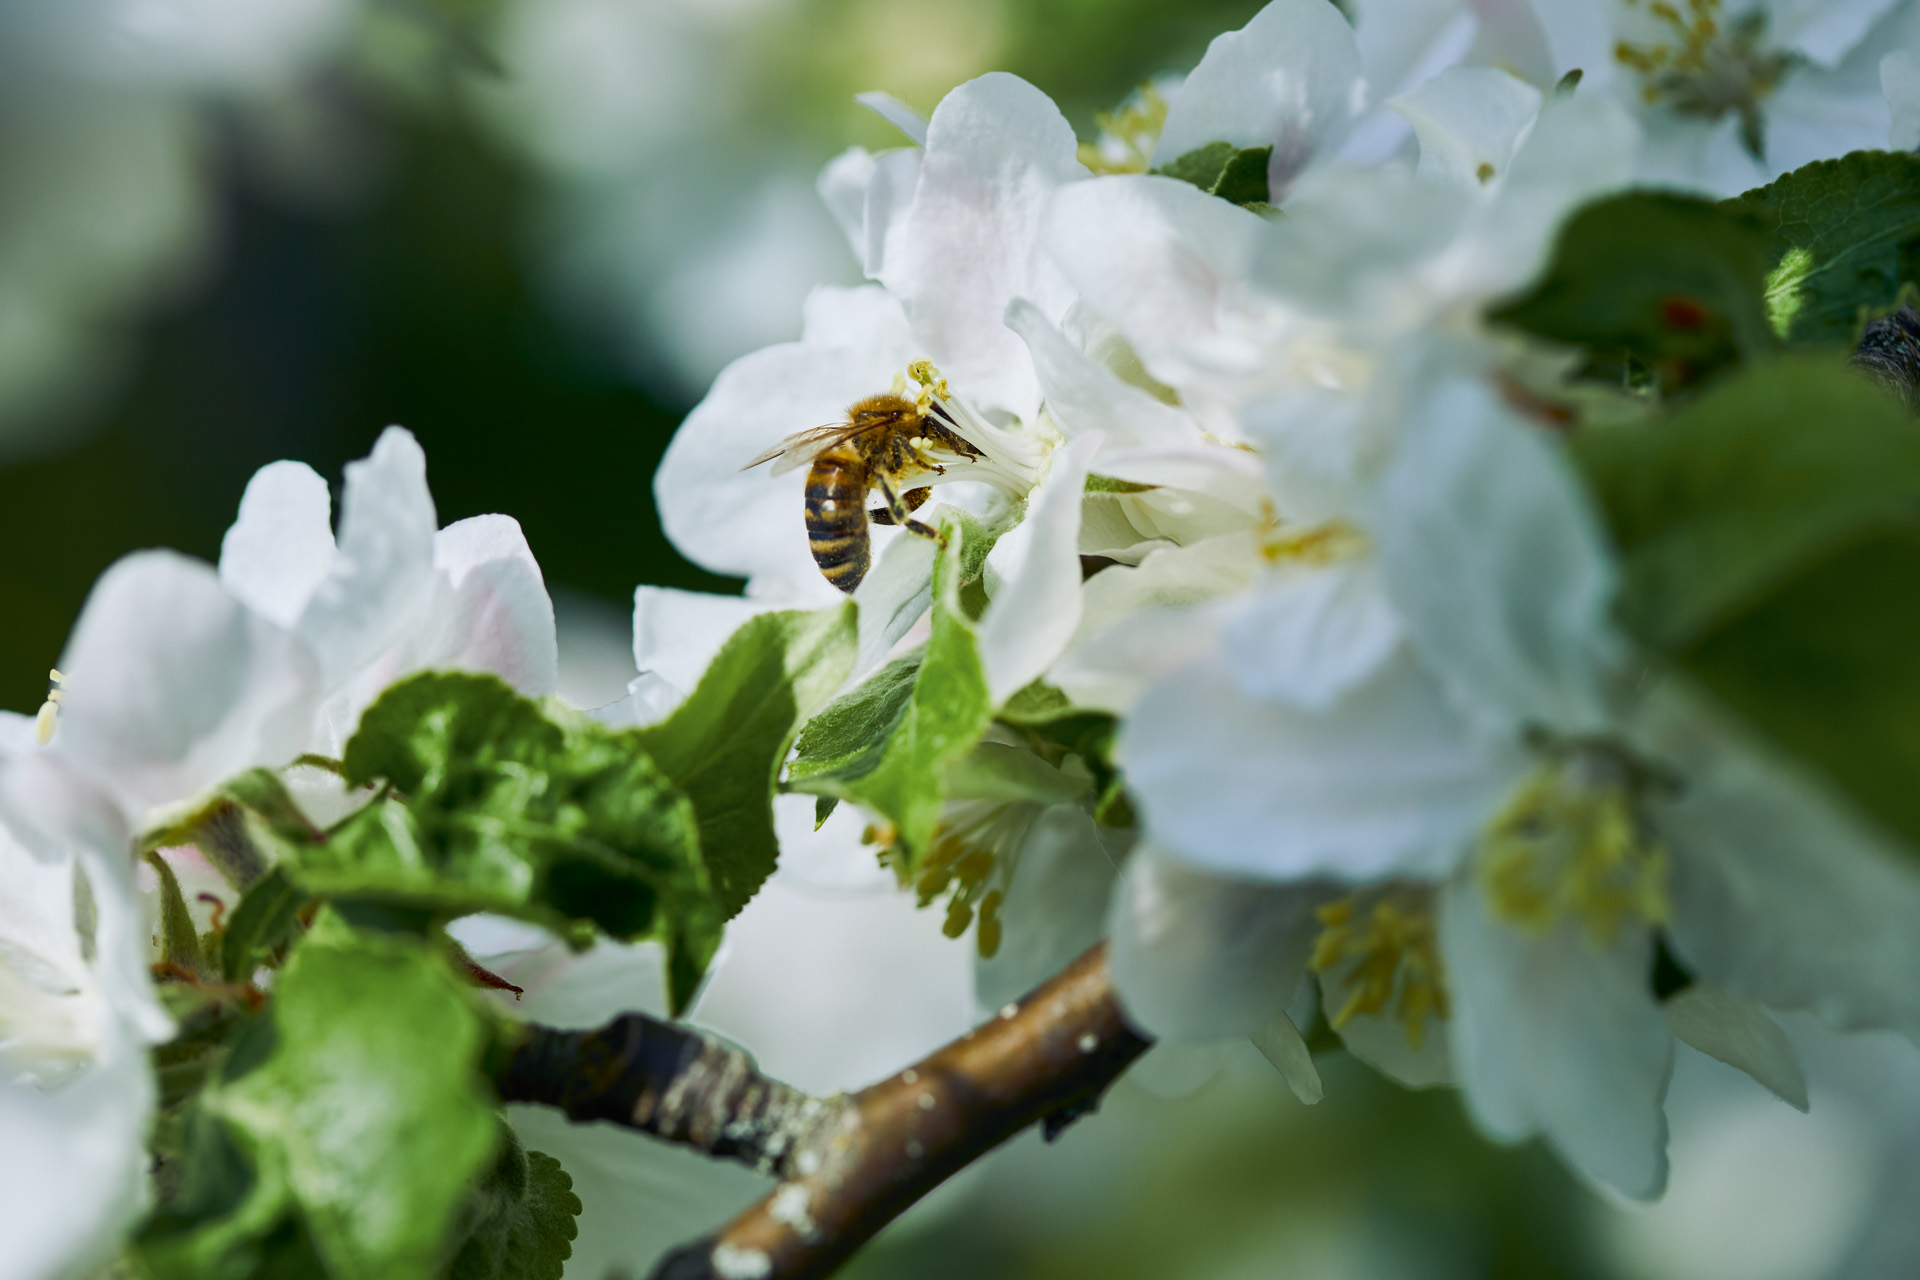 Imagem ampliada de uma abelha numa flor branca